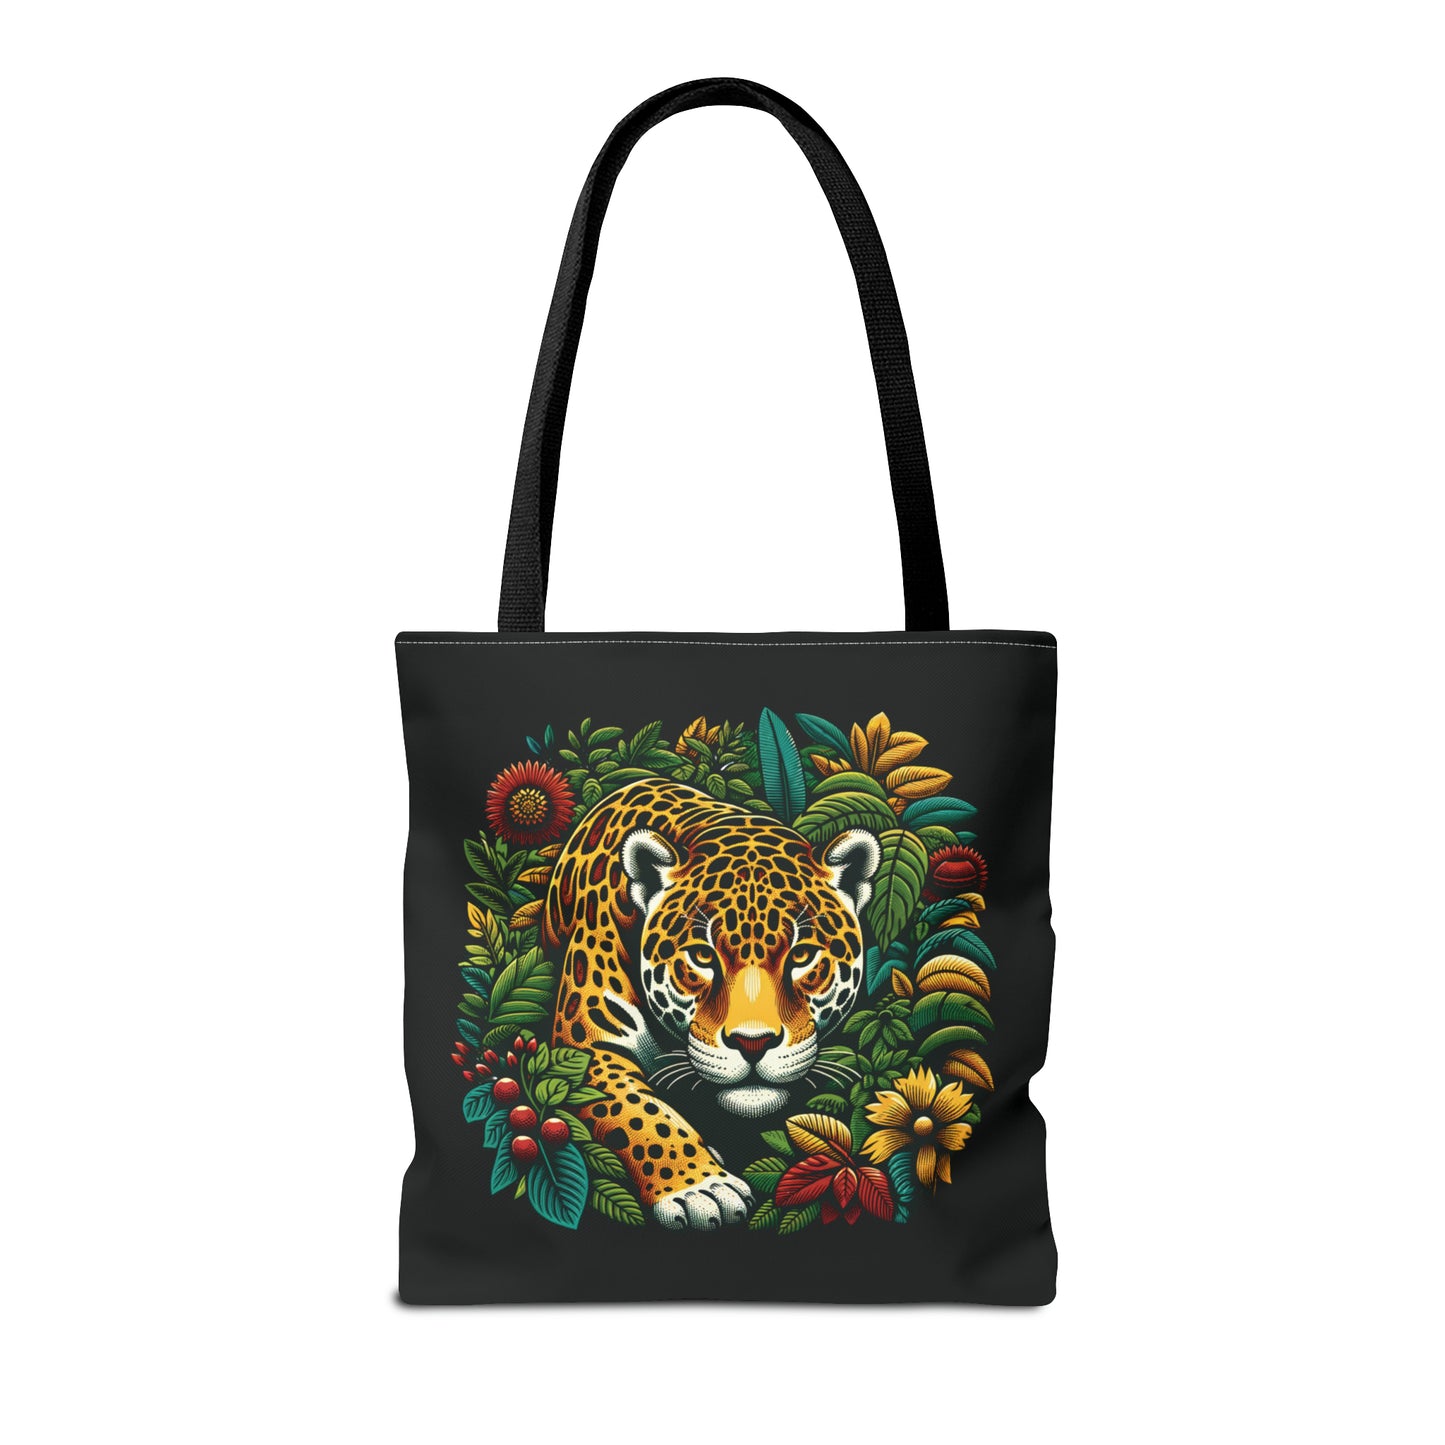 Jaguar in Bushes - Tote Bag